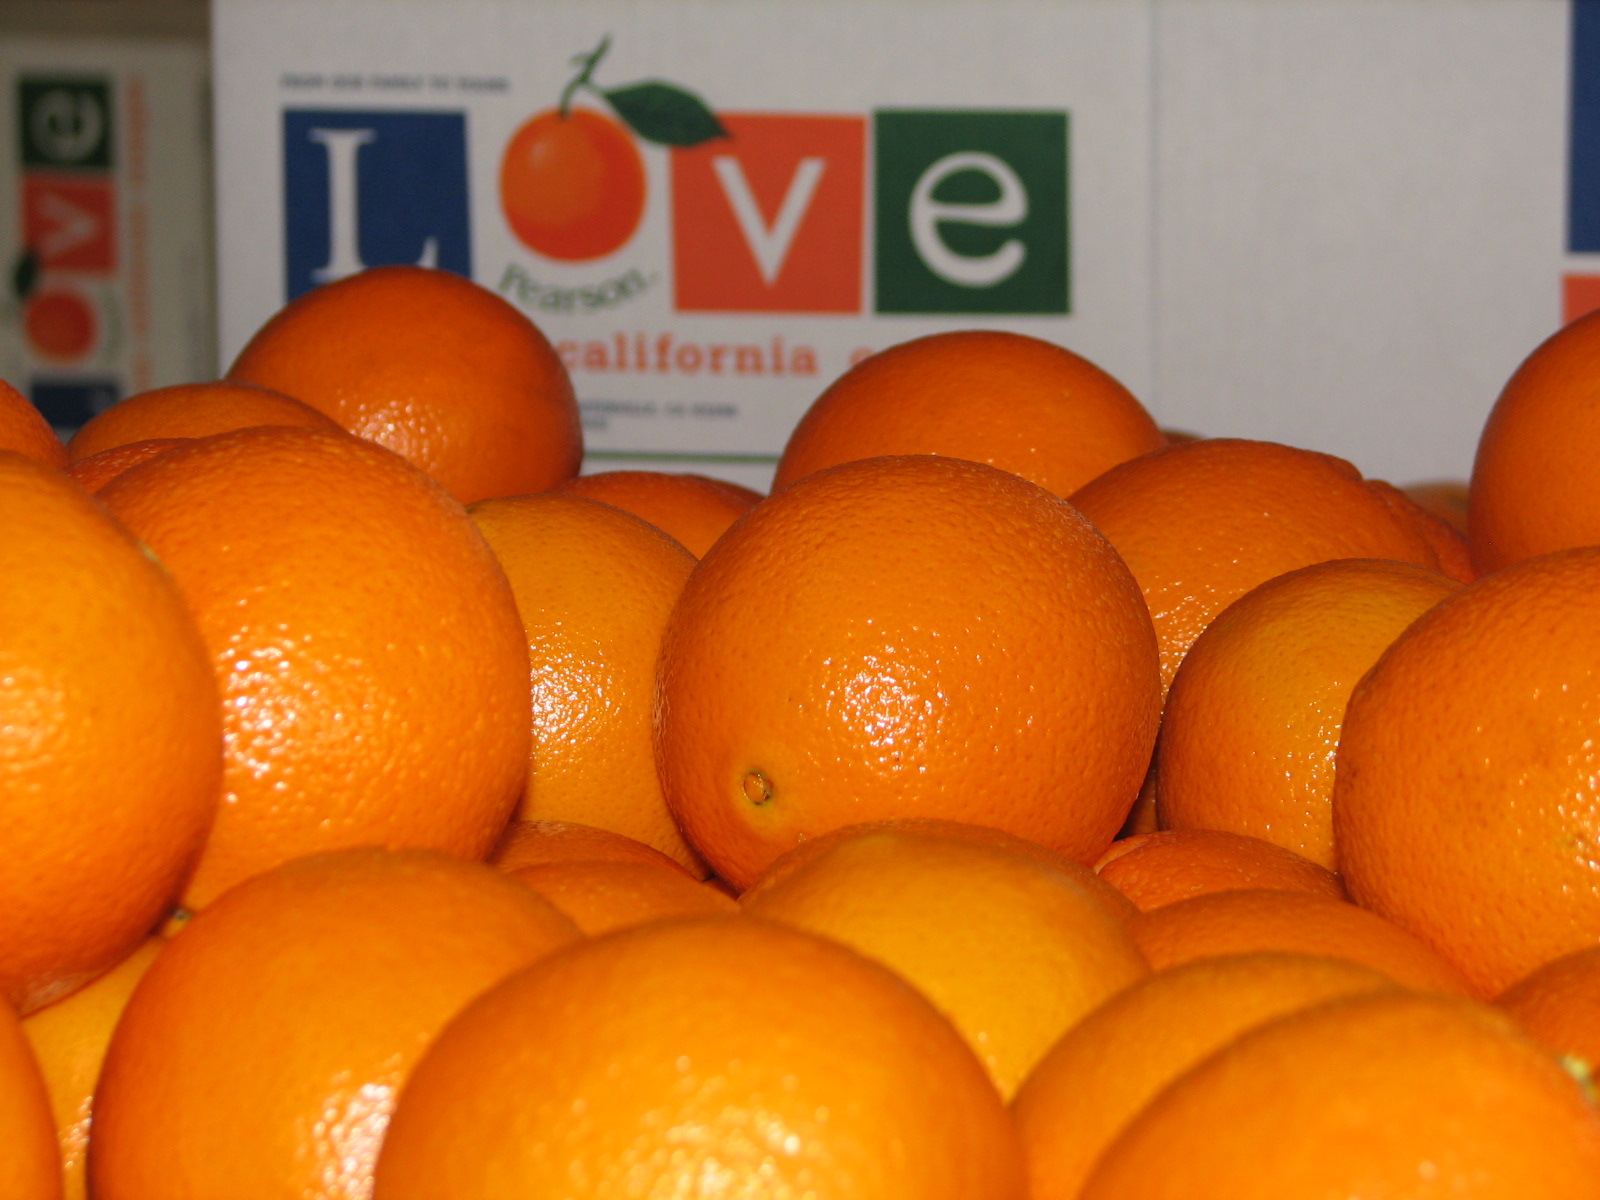 California Oranges - Gift Grade California Navel Oranges